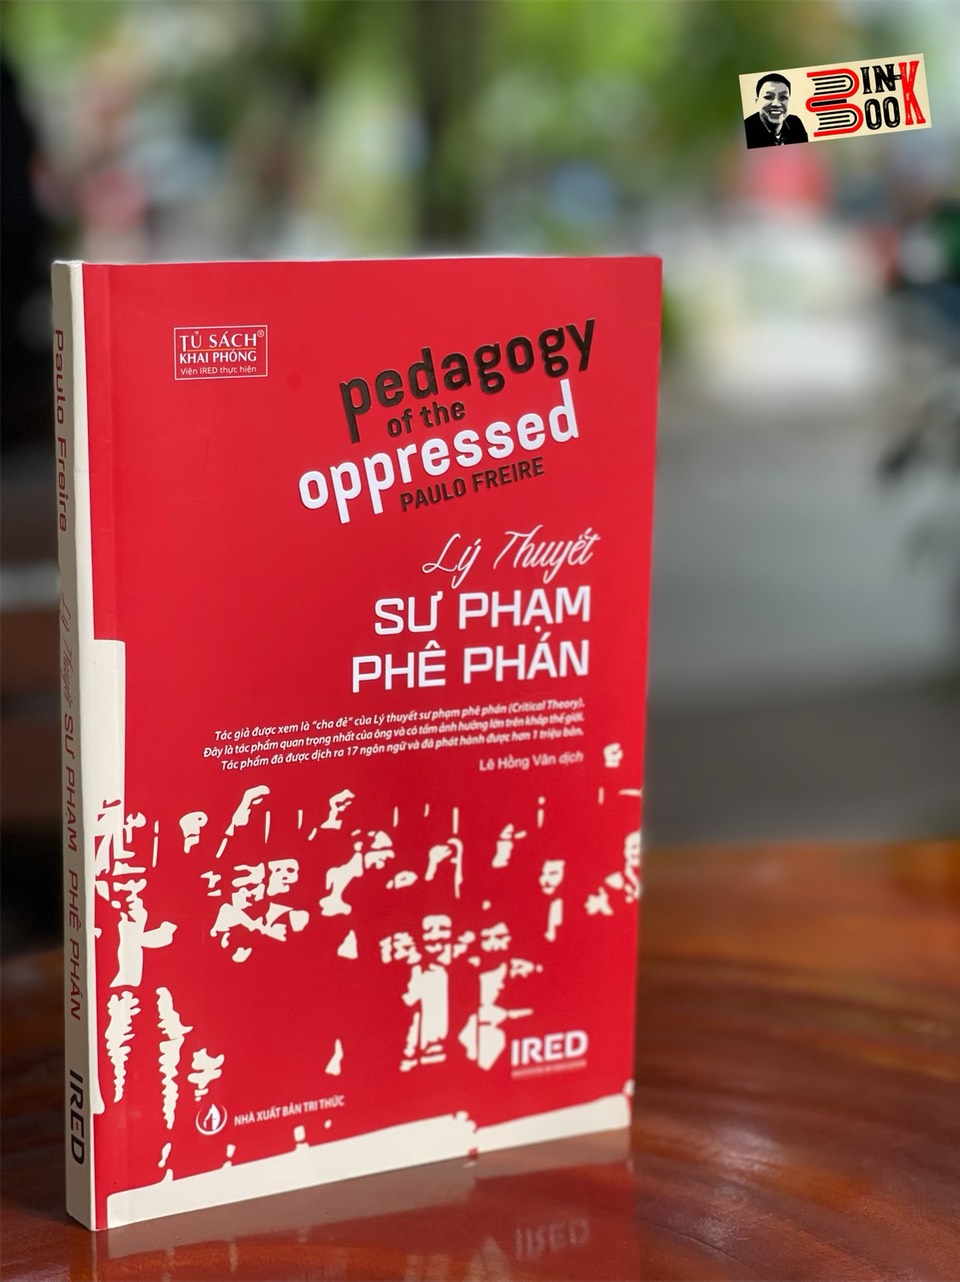 LÝ THUYẾT SƯ PHẠM PHÊ PHÁN – Paulo Freire - Ấn bản kỷ niệm 50 năm – Viện IRED